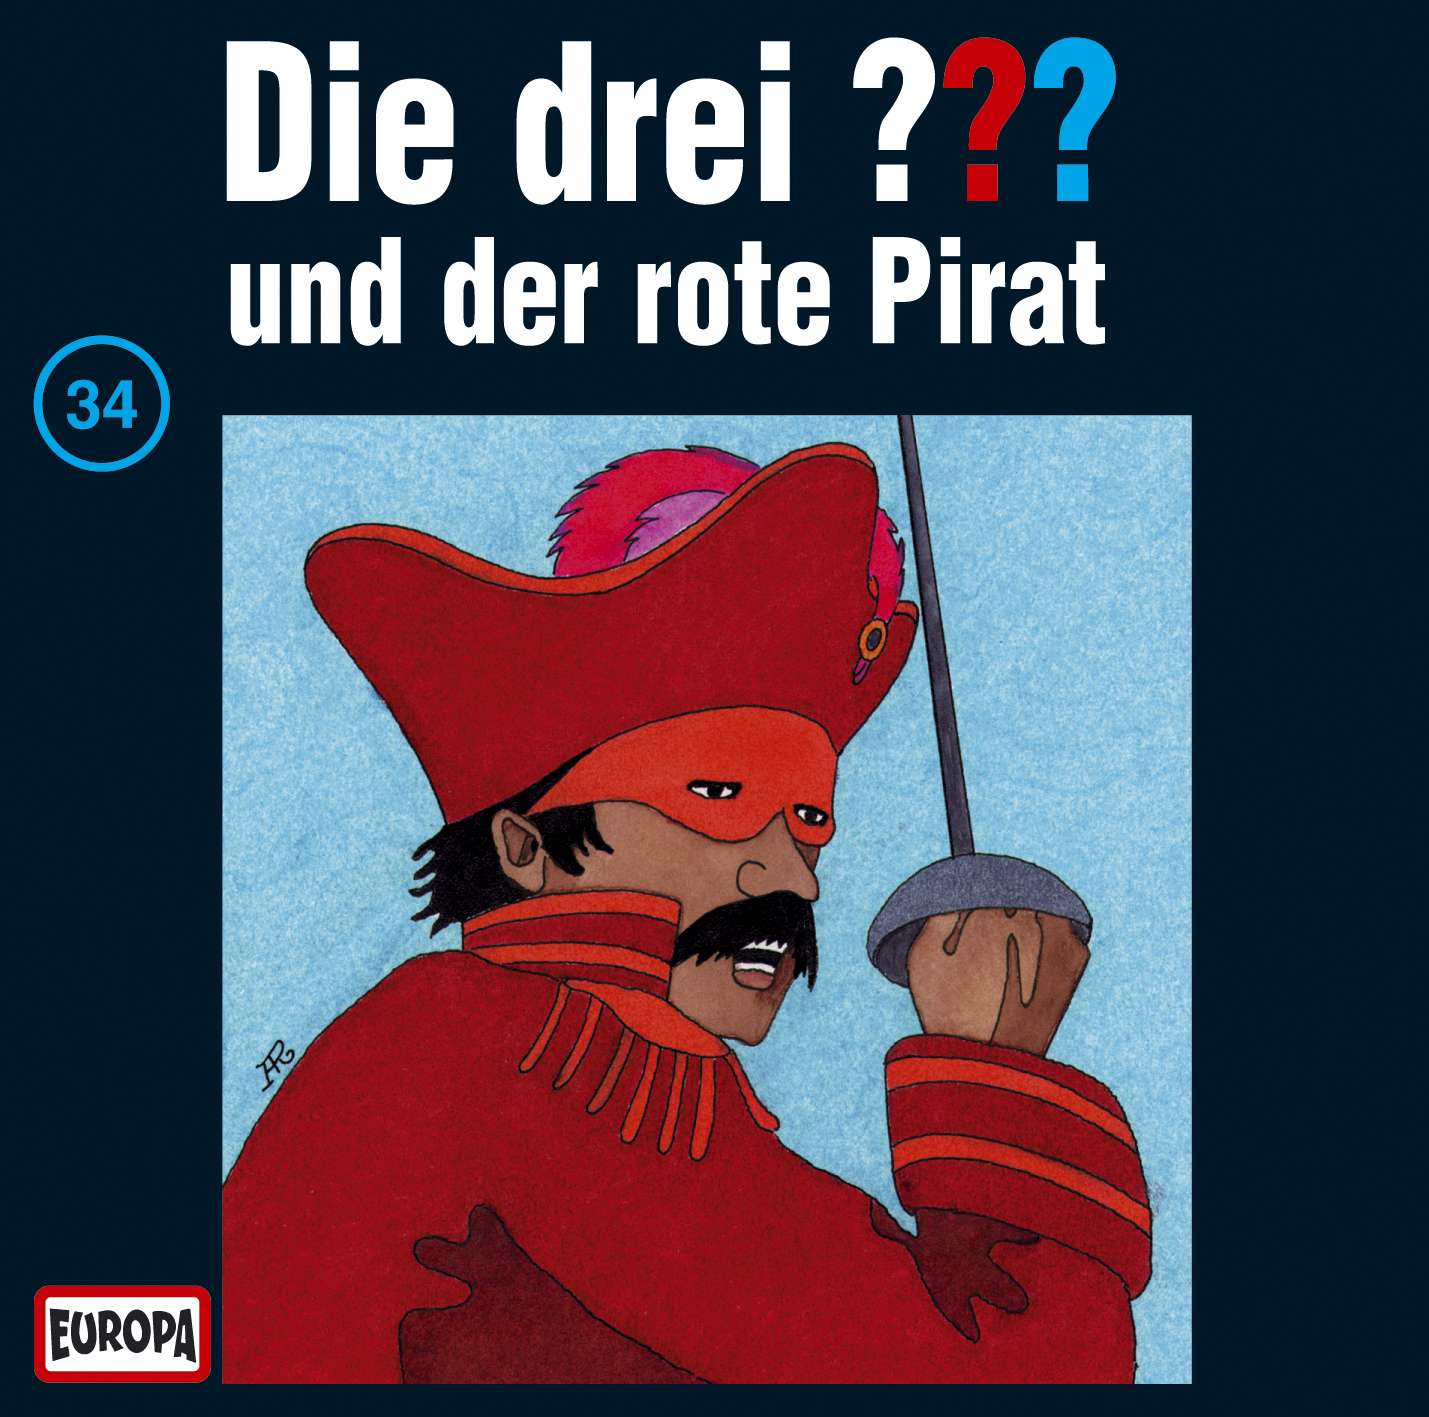 Die drei ??? - und der rote Pirat